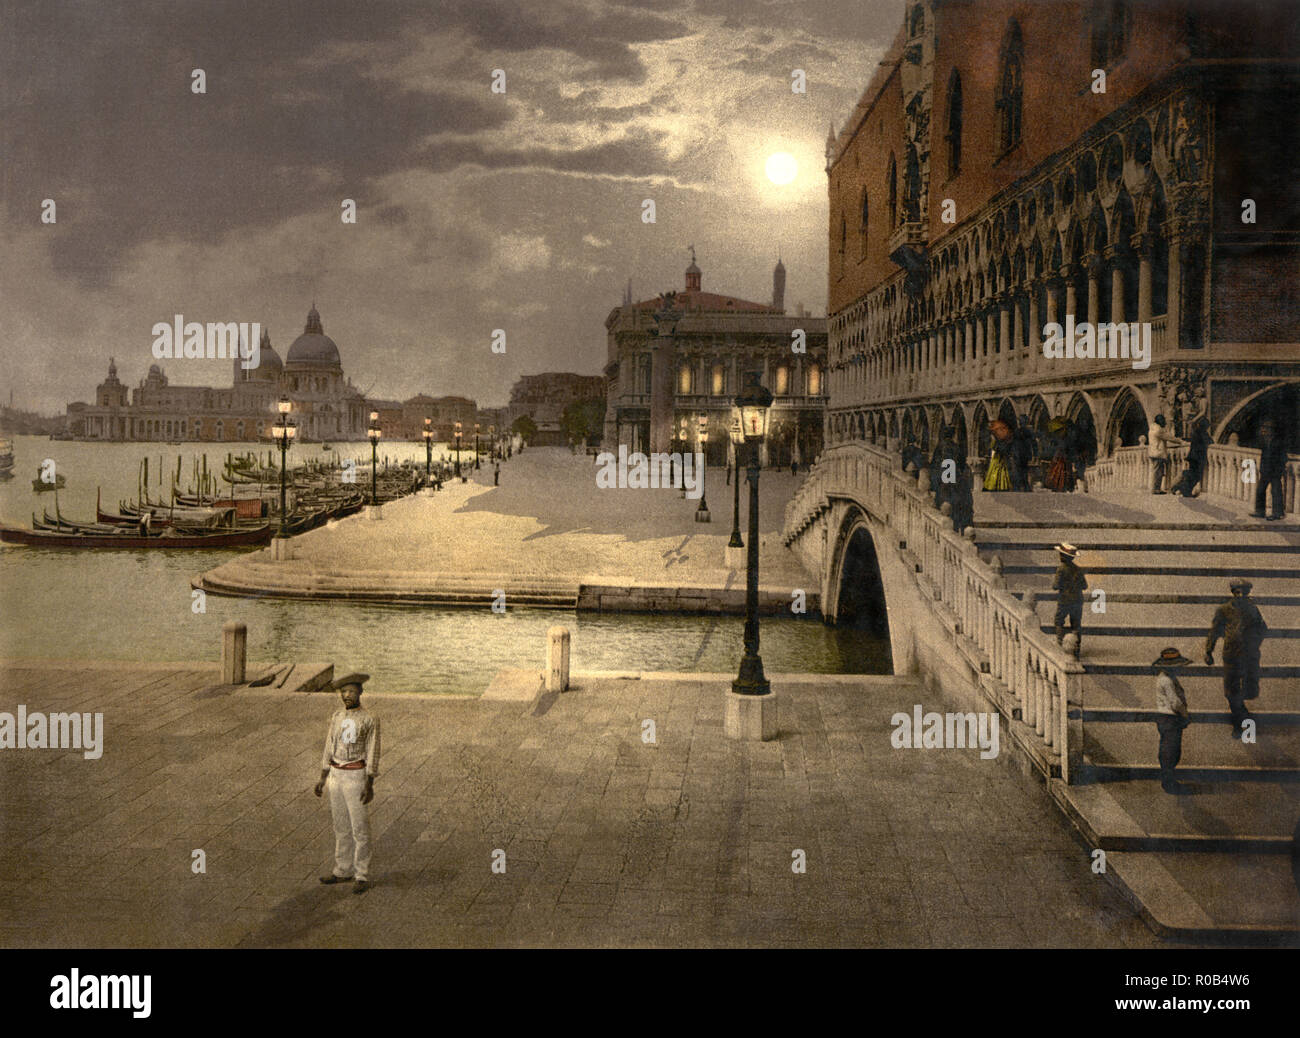 Du Palais des Doges et de Saint Marc par Moonlight, Venise, Italie, impression Photochrome, Detroit Publishing Company, 1900 Banque D'Images